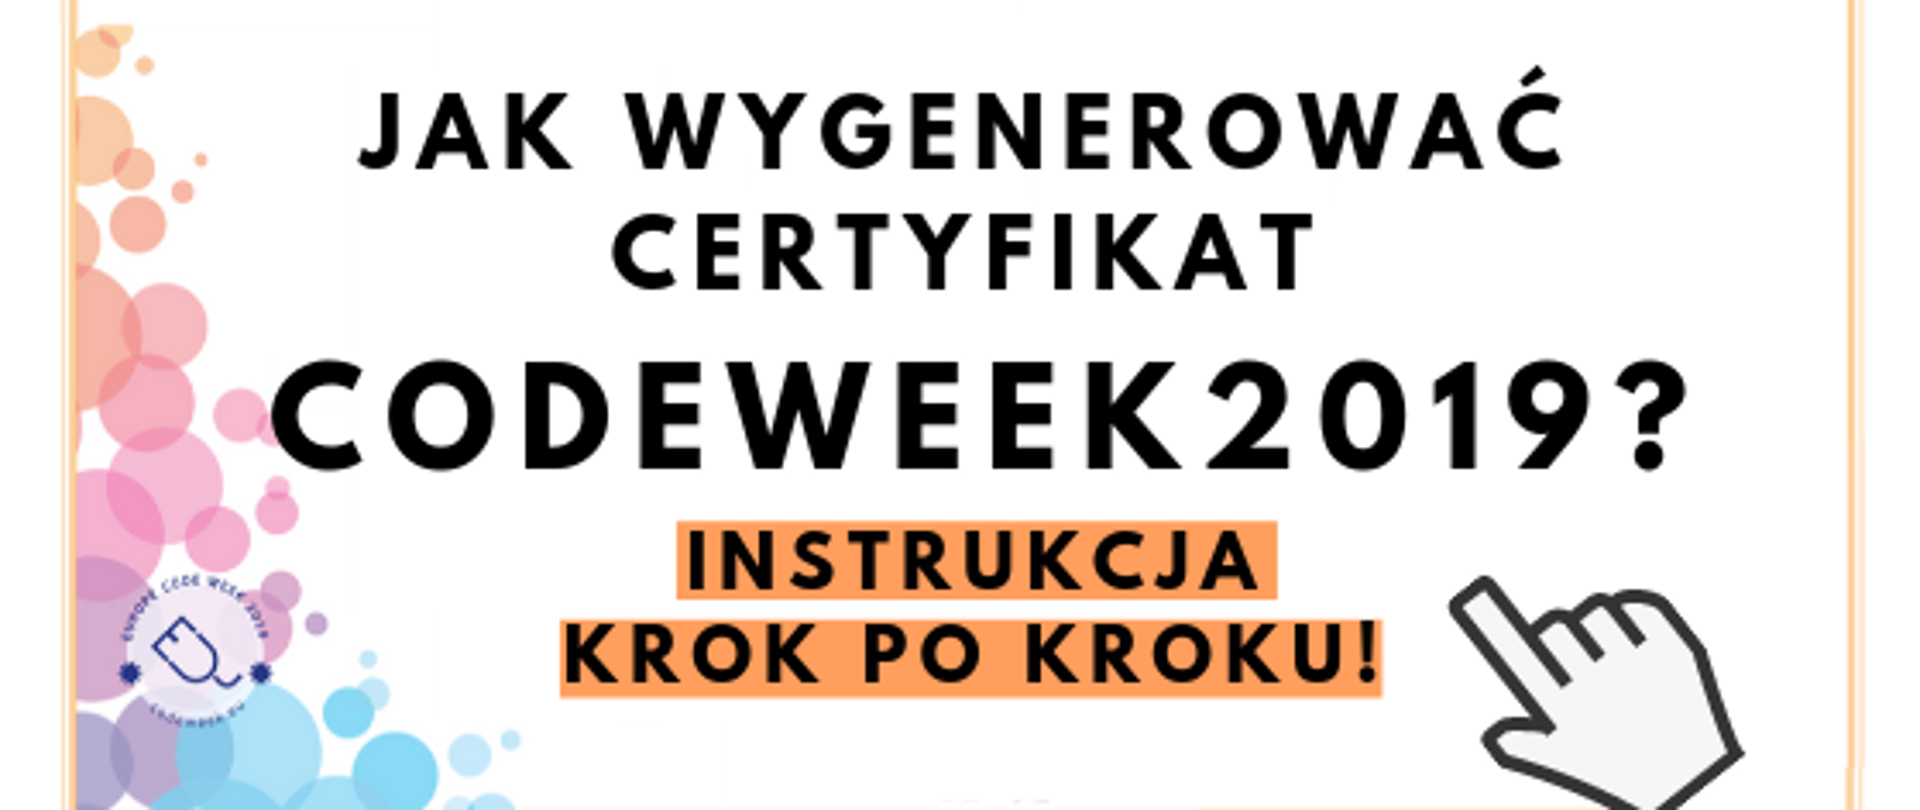 Na obrazie widać napis: Jak wygenerować certyfikat Codeweek 2019? Instrukcja krok po kroku! Obok znajduje się logo CodeWeek oraz duży kursor-"łapka", wskazujący na napis. U dołu znajduje się pasek logotypów: Europejskie Fundusze Polska Cyfrowa, Ministerstwo Cyfryzacji, NASK i Unia Europejska Europejski Fundusz Rozwoju Regionalnego.